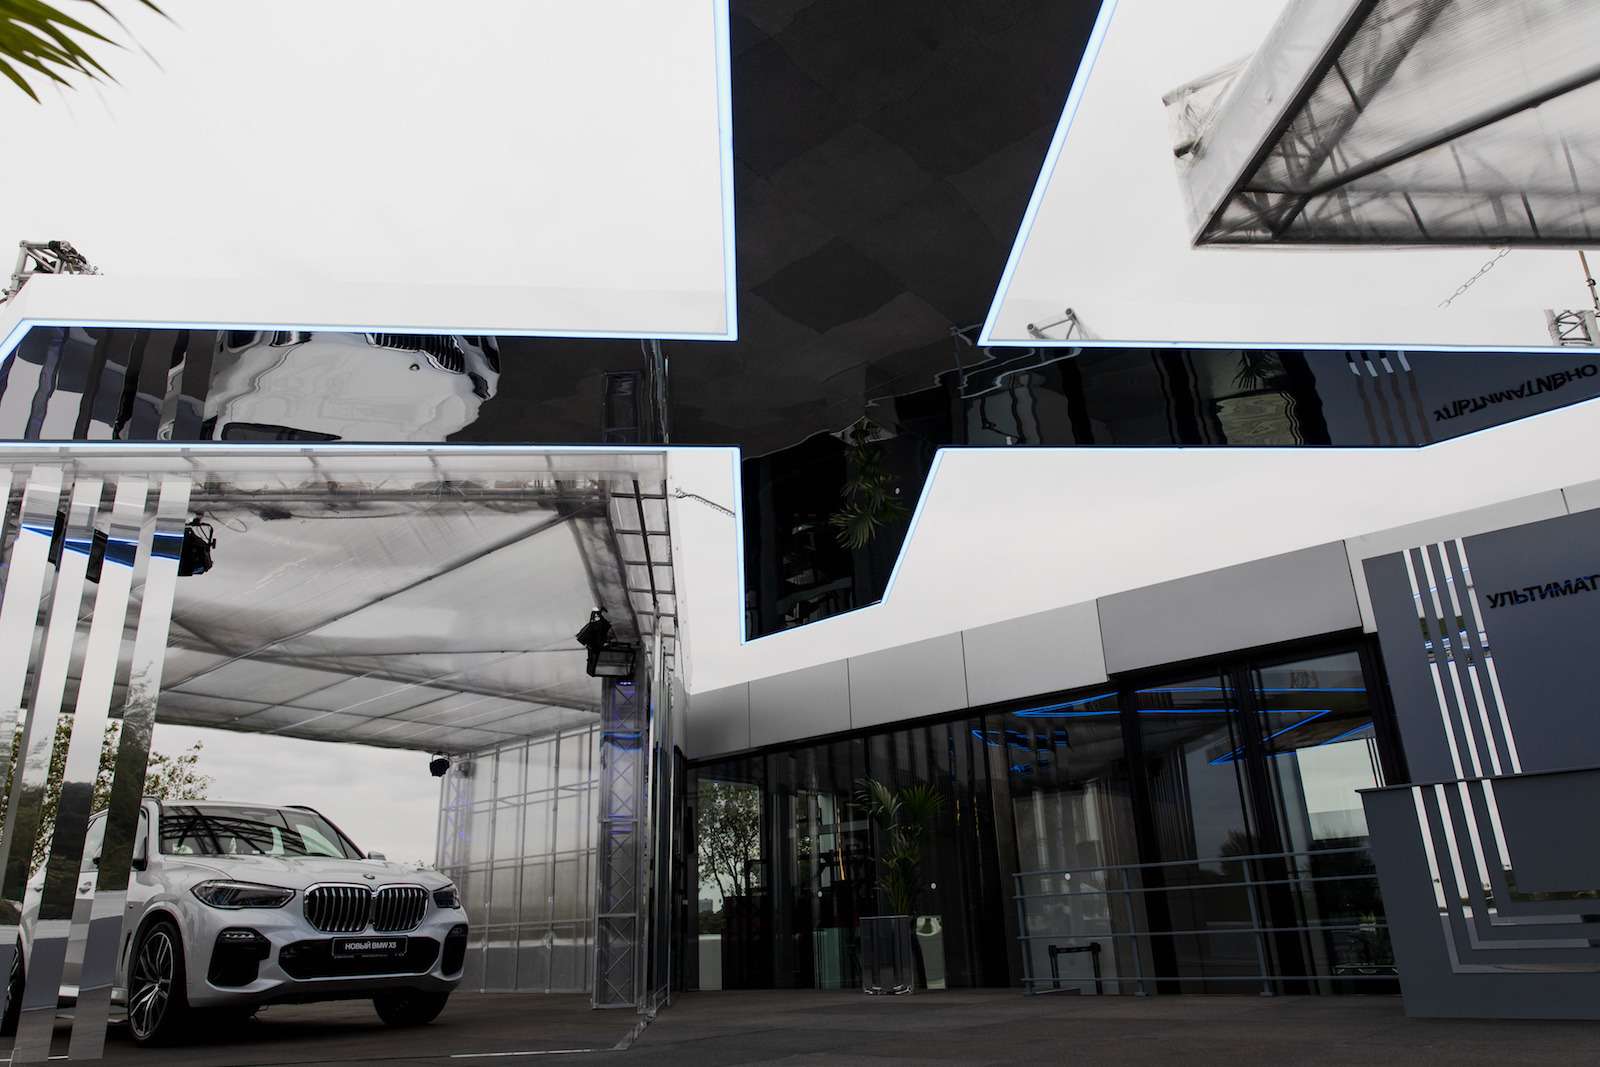 Абсолютно новый BMW X5 всплыл в Москве. Задолго до официальной премьеры! — фото 889828